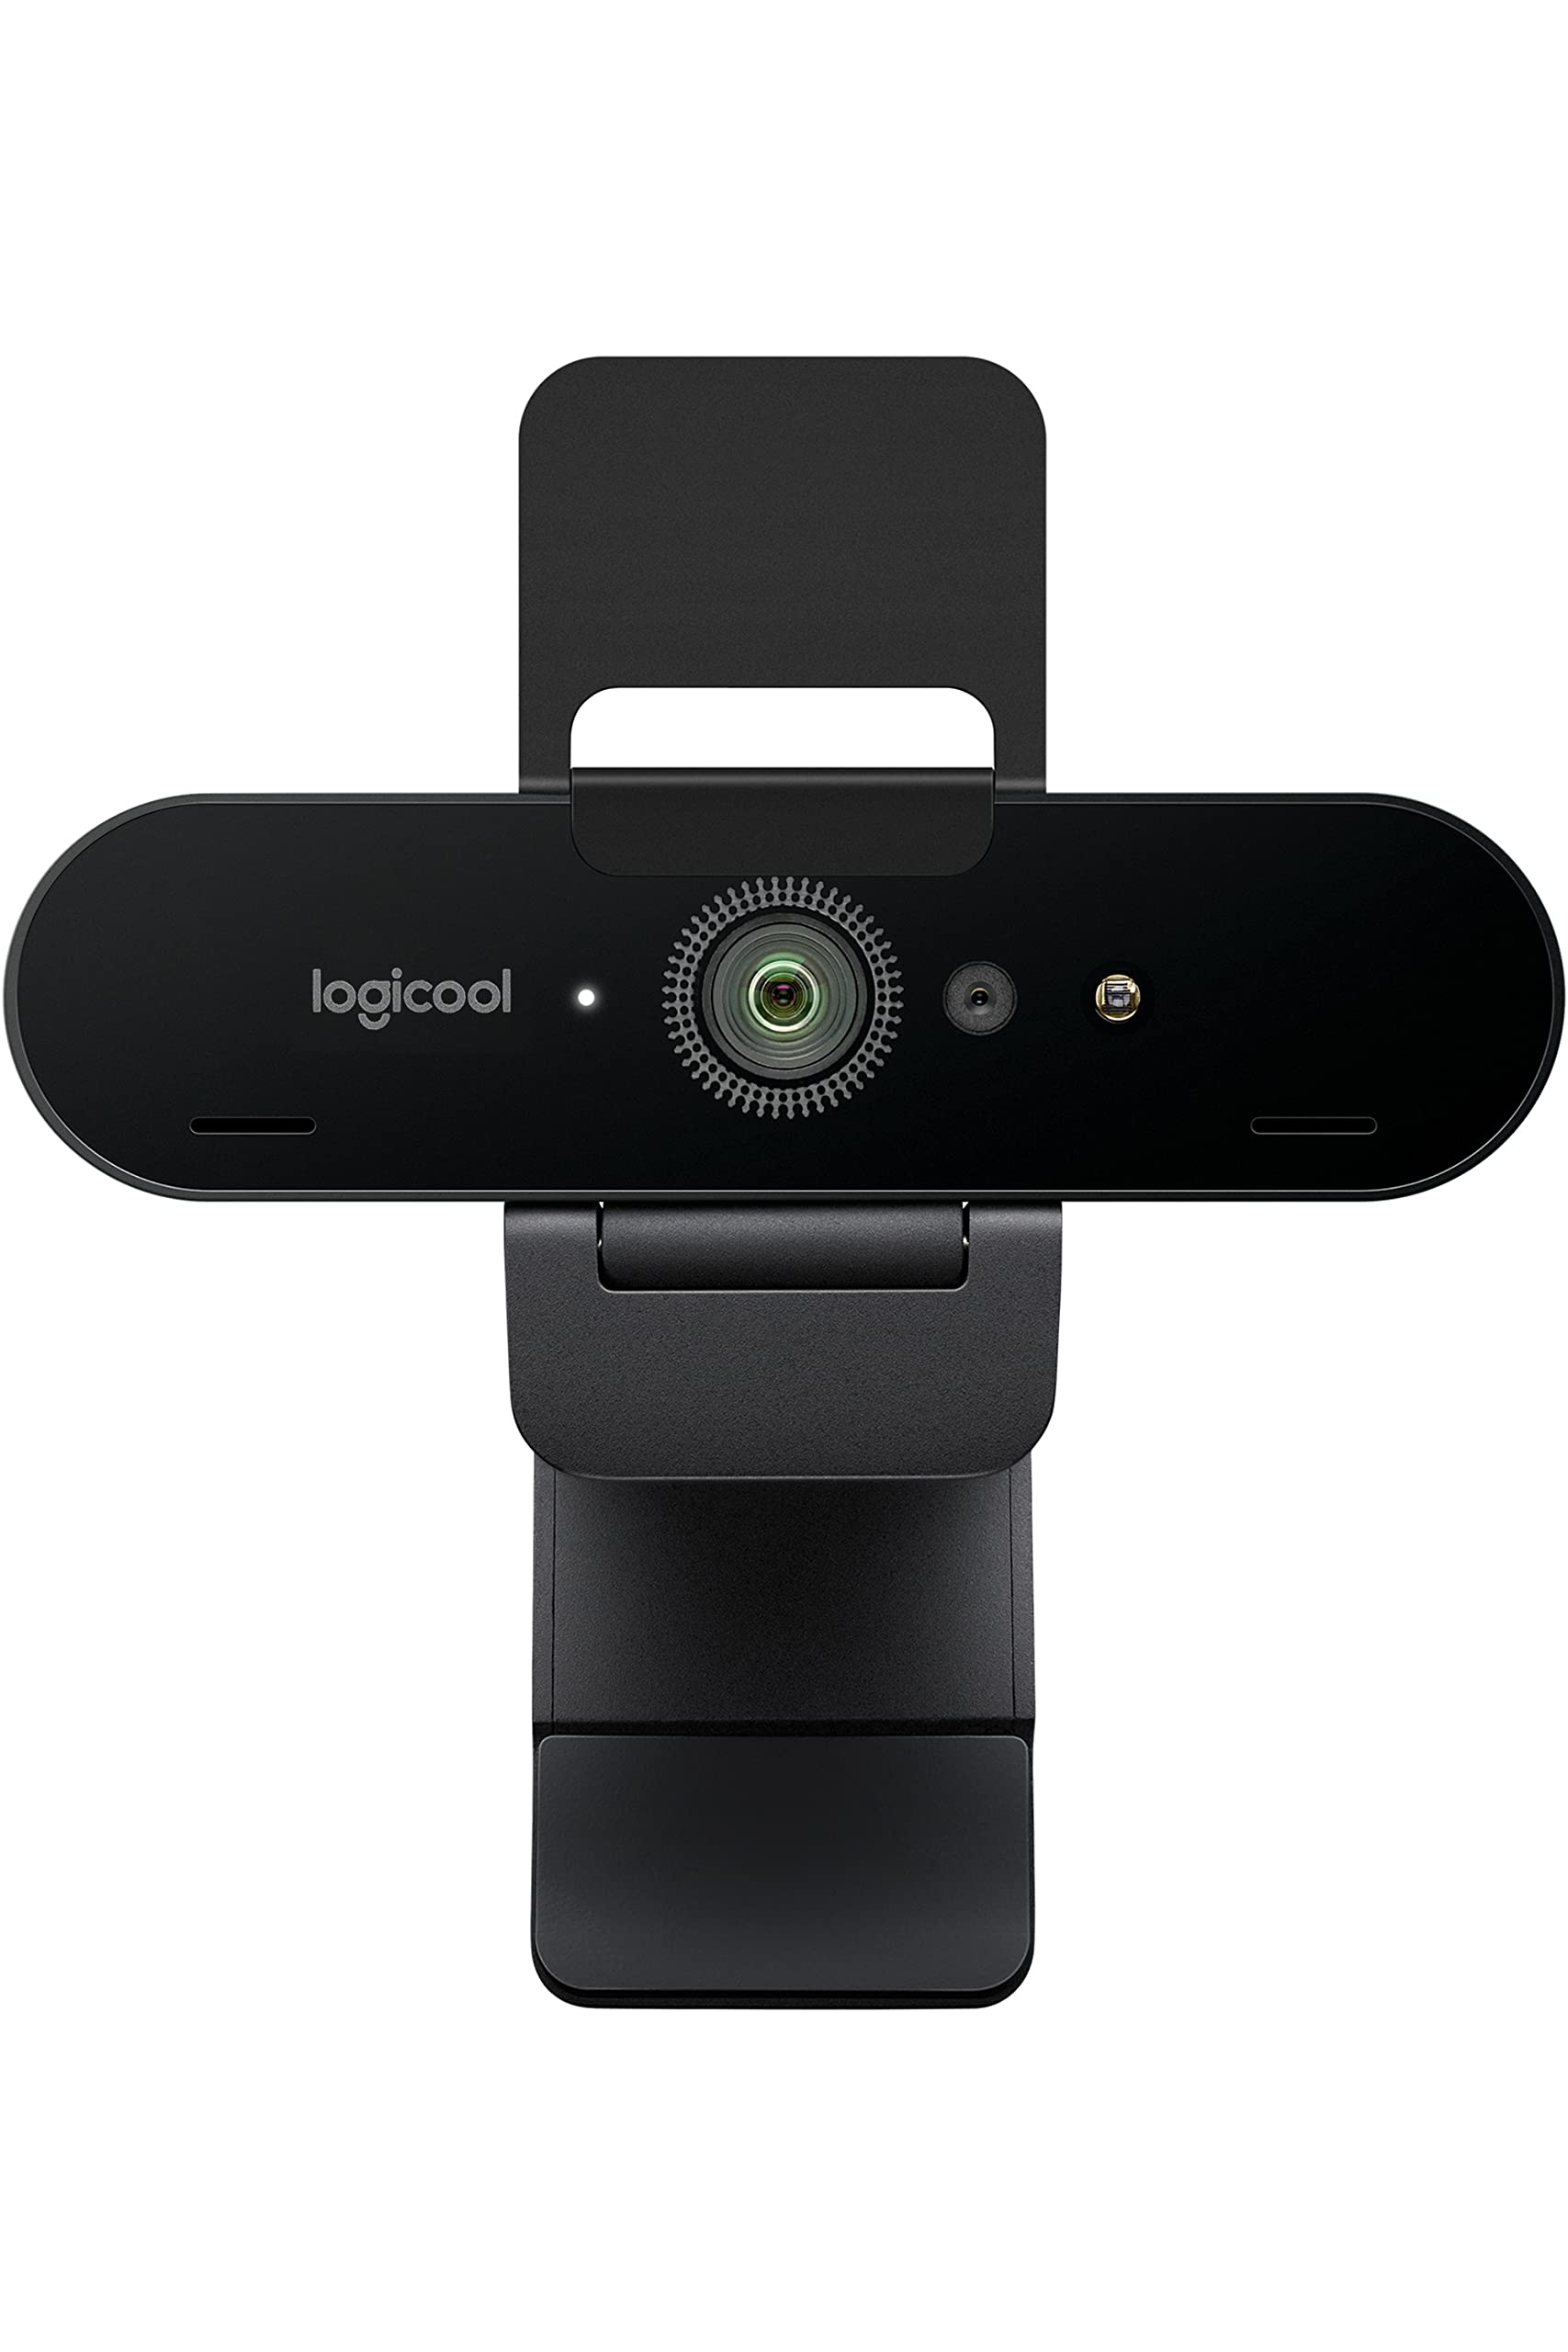 ロジクール Webカメラ Brio C1000s Ultra 4K HD 60fps オートフォーカス HDR 対応 プライバシーシャッタ― 自動光補正 ノイズキャンセリ